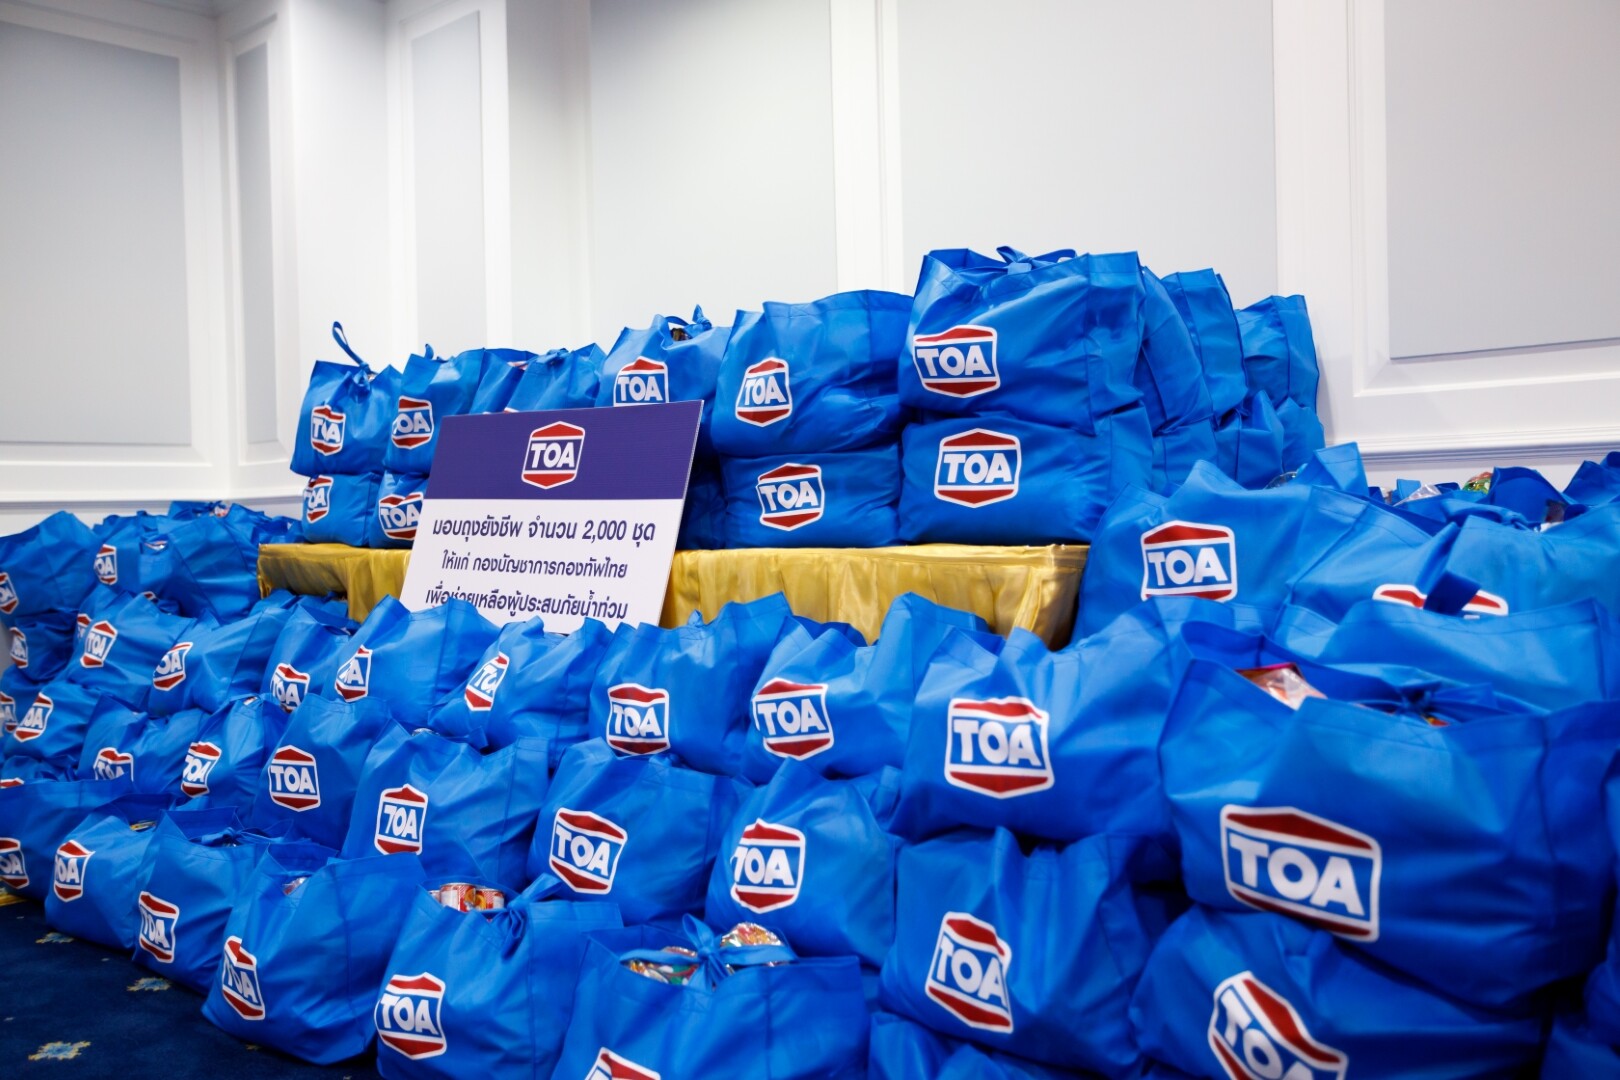 TOA มอบถุงยังชีพ2,000ชุด ให้แก่กองบัญชาการกองทัพไทย ช่วยผู้ประสบภัยน้ำท่วม